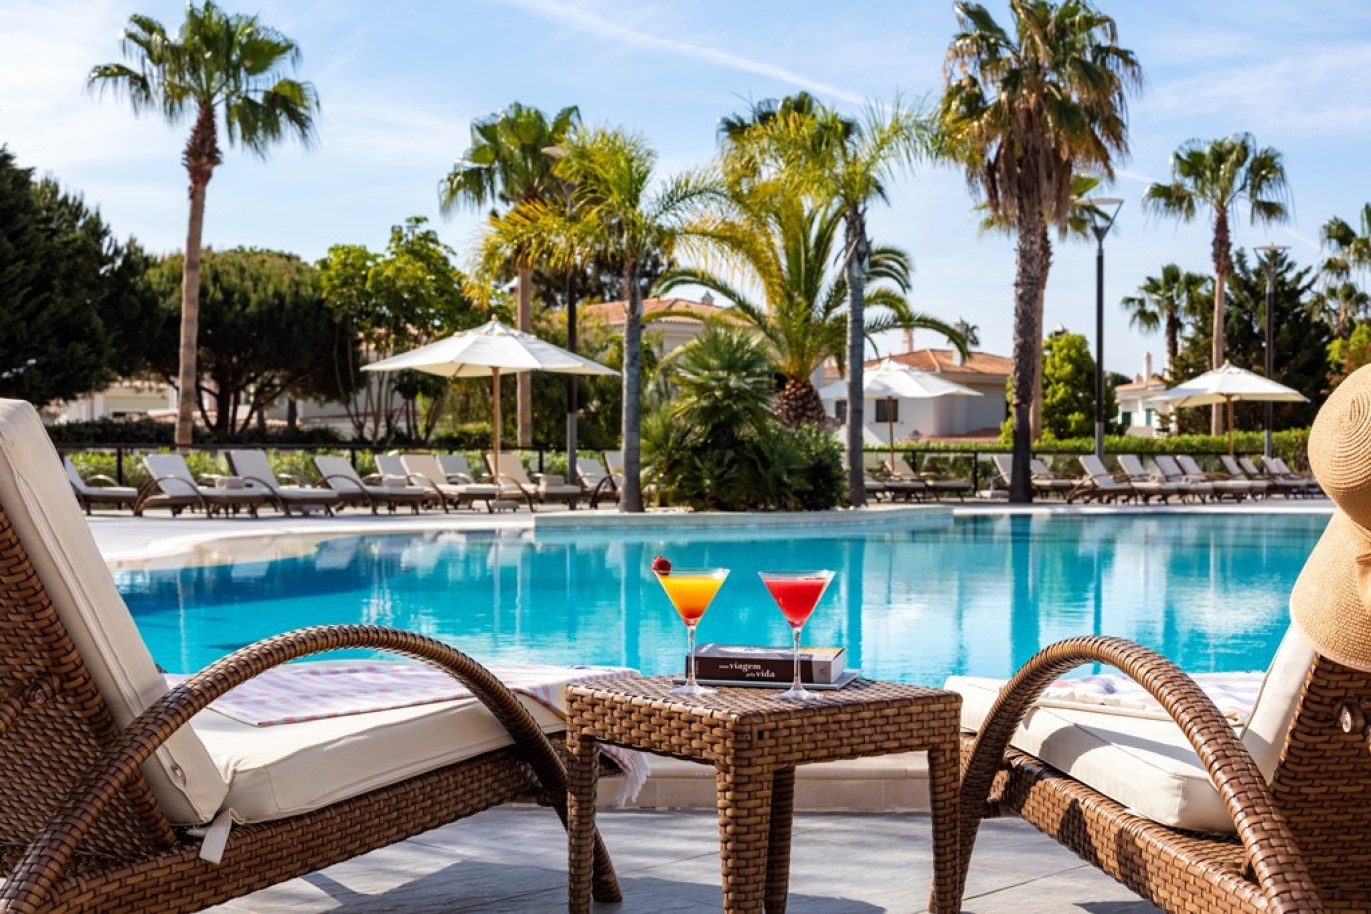 Apartamento, 2 quartos, piscina, para venda na Quinta do Lago, Algarve_262246